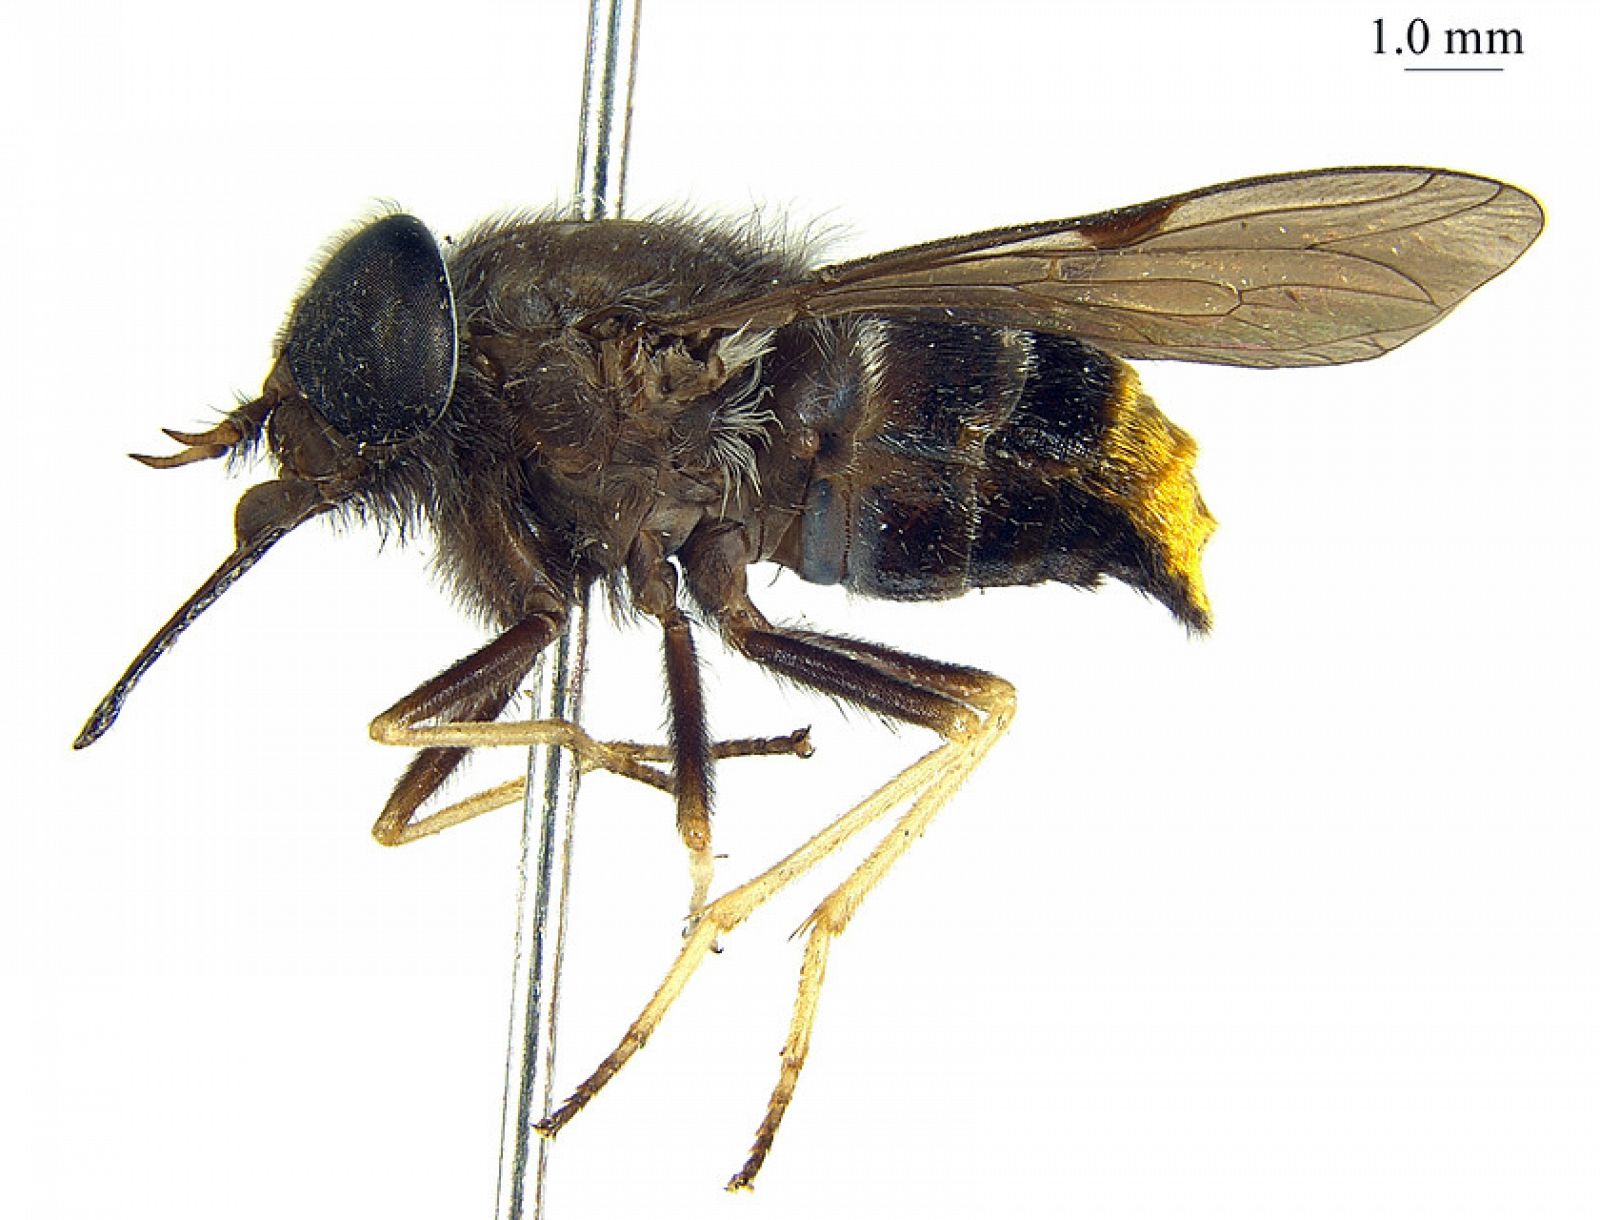 La mosca tiene el abdomen dorado, como uno de los atuendos empleados por Beyoncé